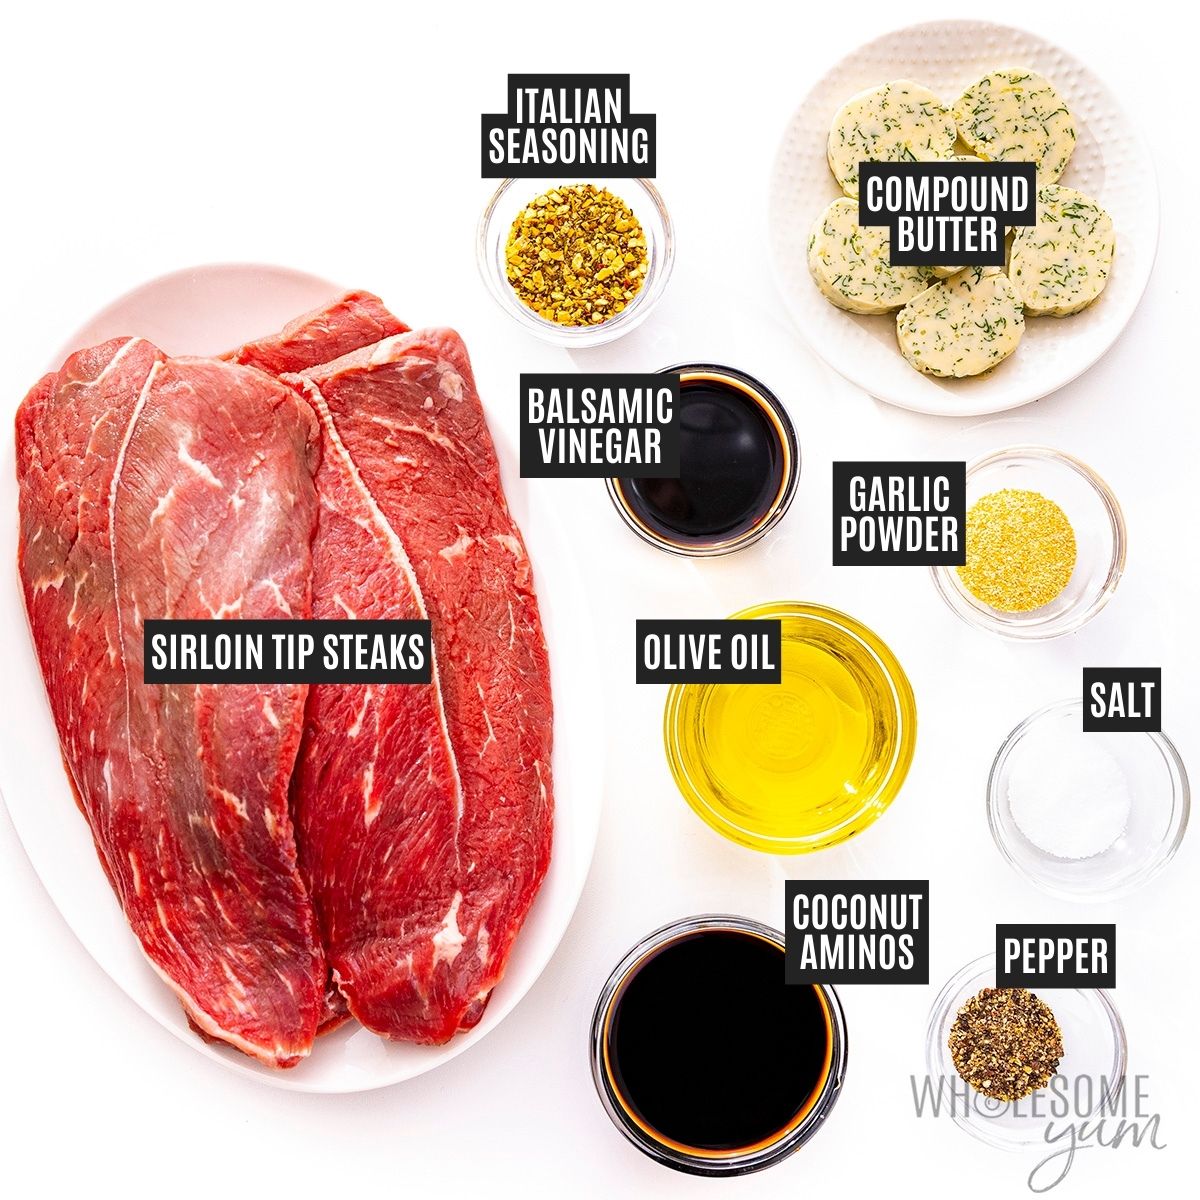 Sirloin tip steak recipe ingredients.